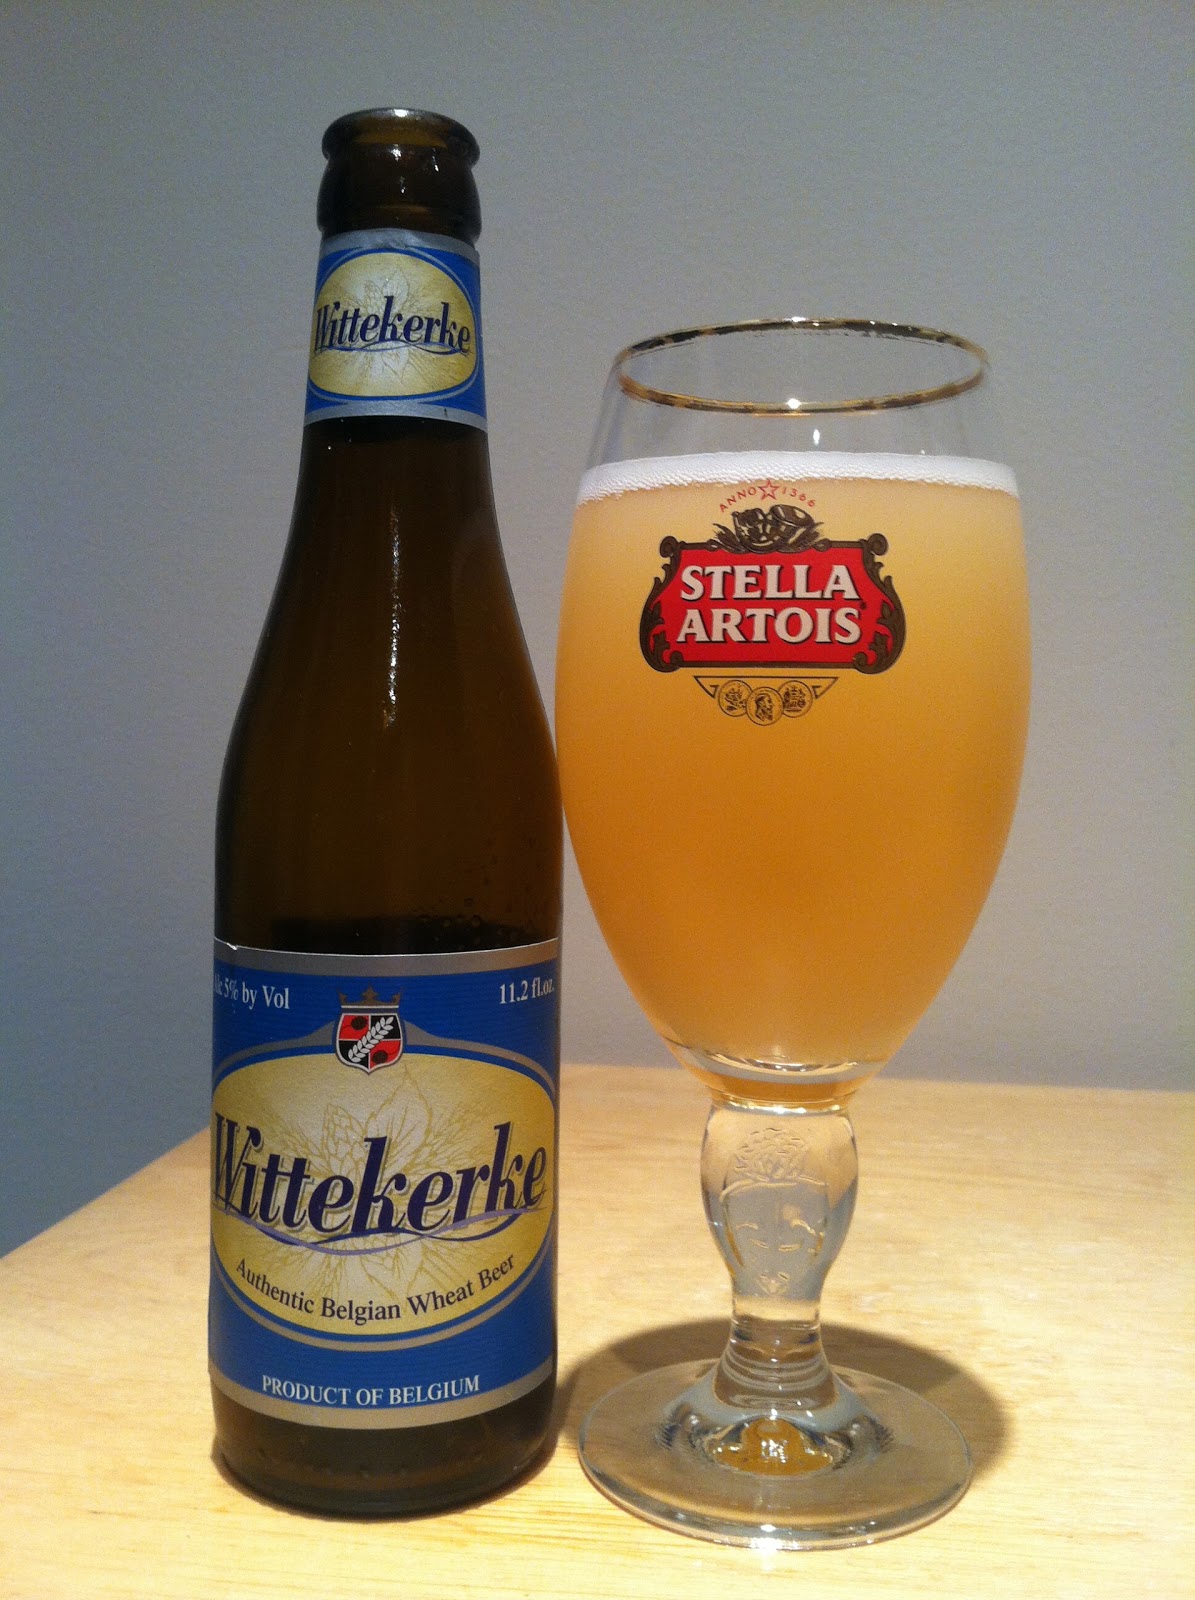 Бельгийское пшеничное. Бельгийское пшеничное пиво. Бельгийское пиво светлое пшеничное. Пшеничное пиво Бельгия. Belgian Wheat Beer пиво.